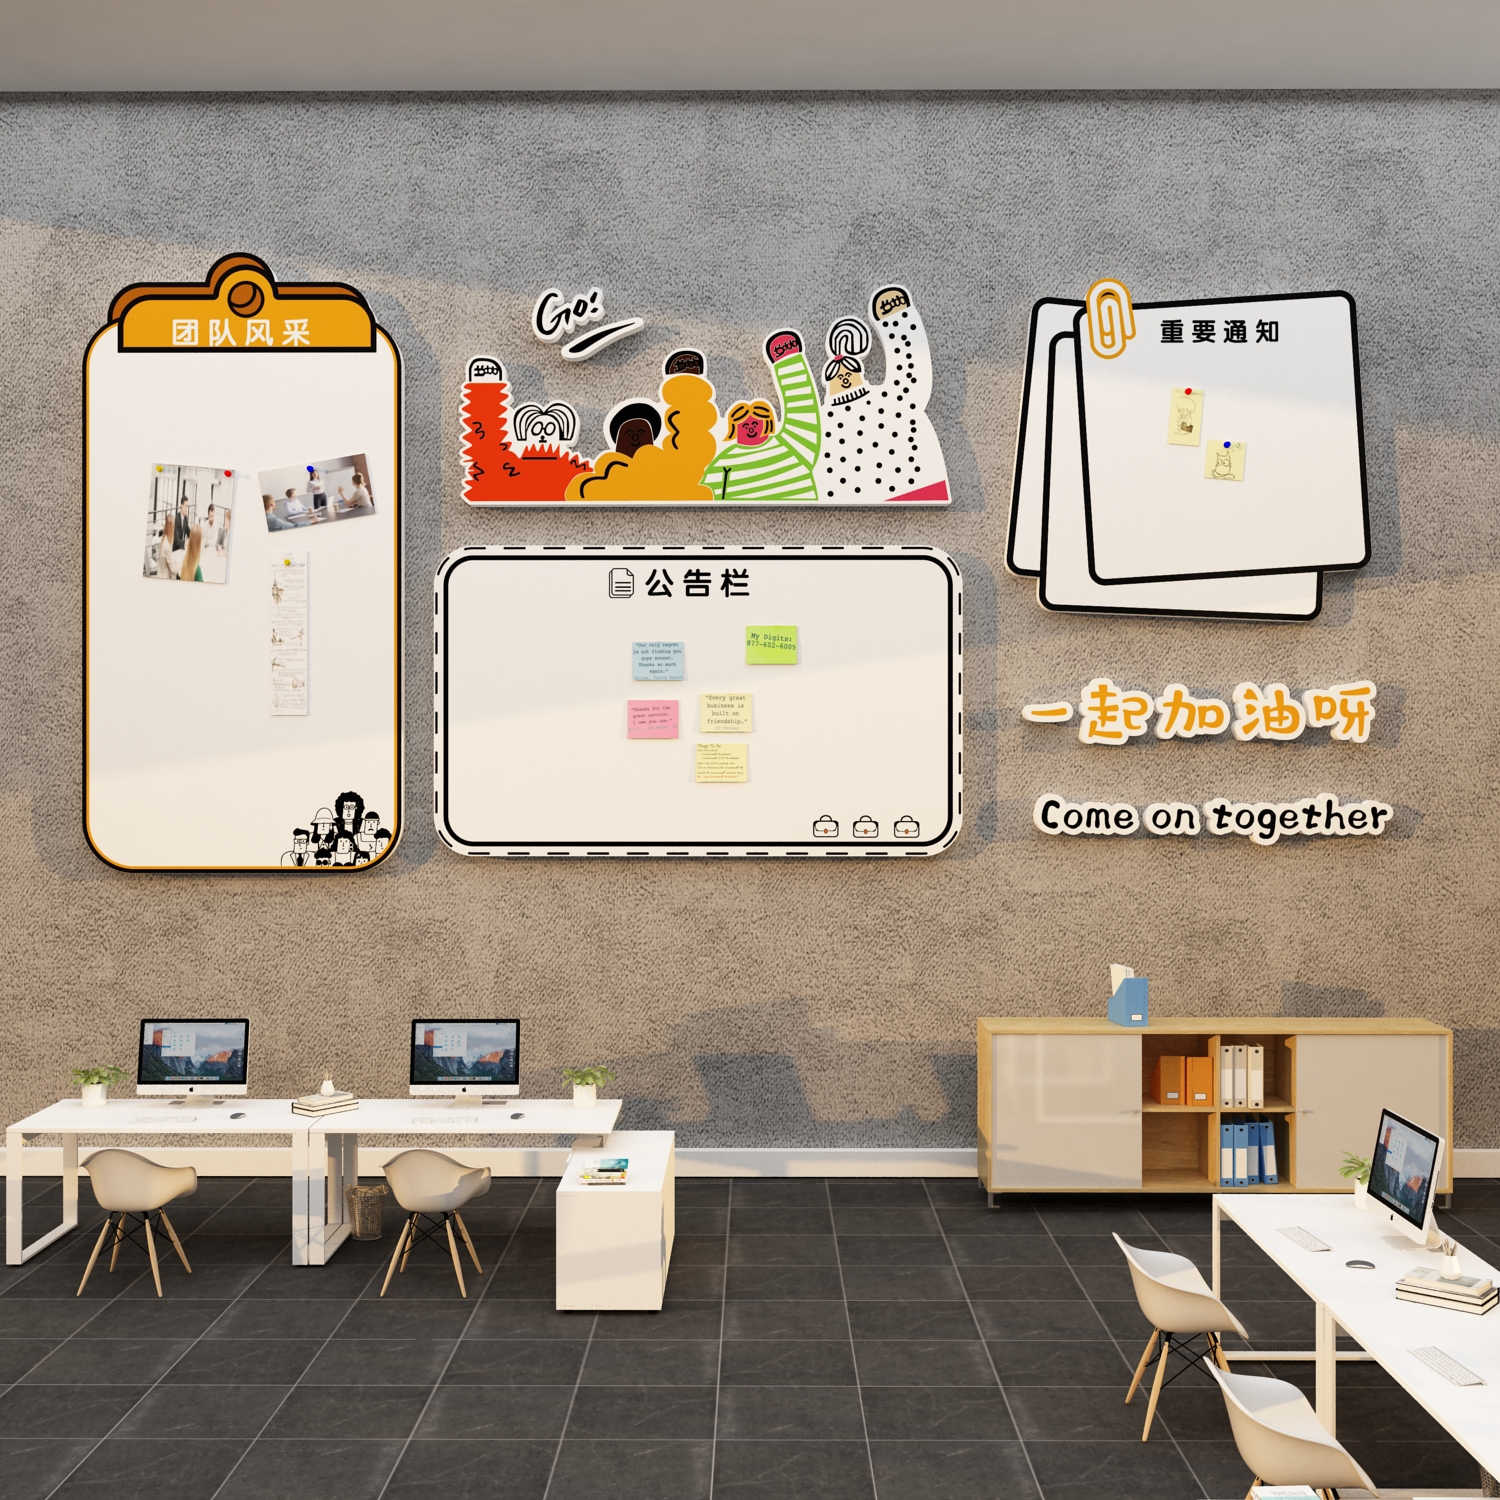 办公室墙面装饰氛围布置企业文化墙贴公司团队风采展示照片公告栏 - 图2